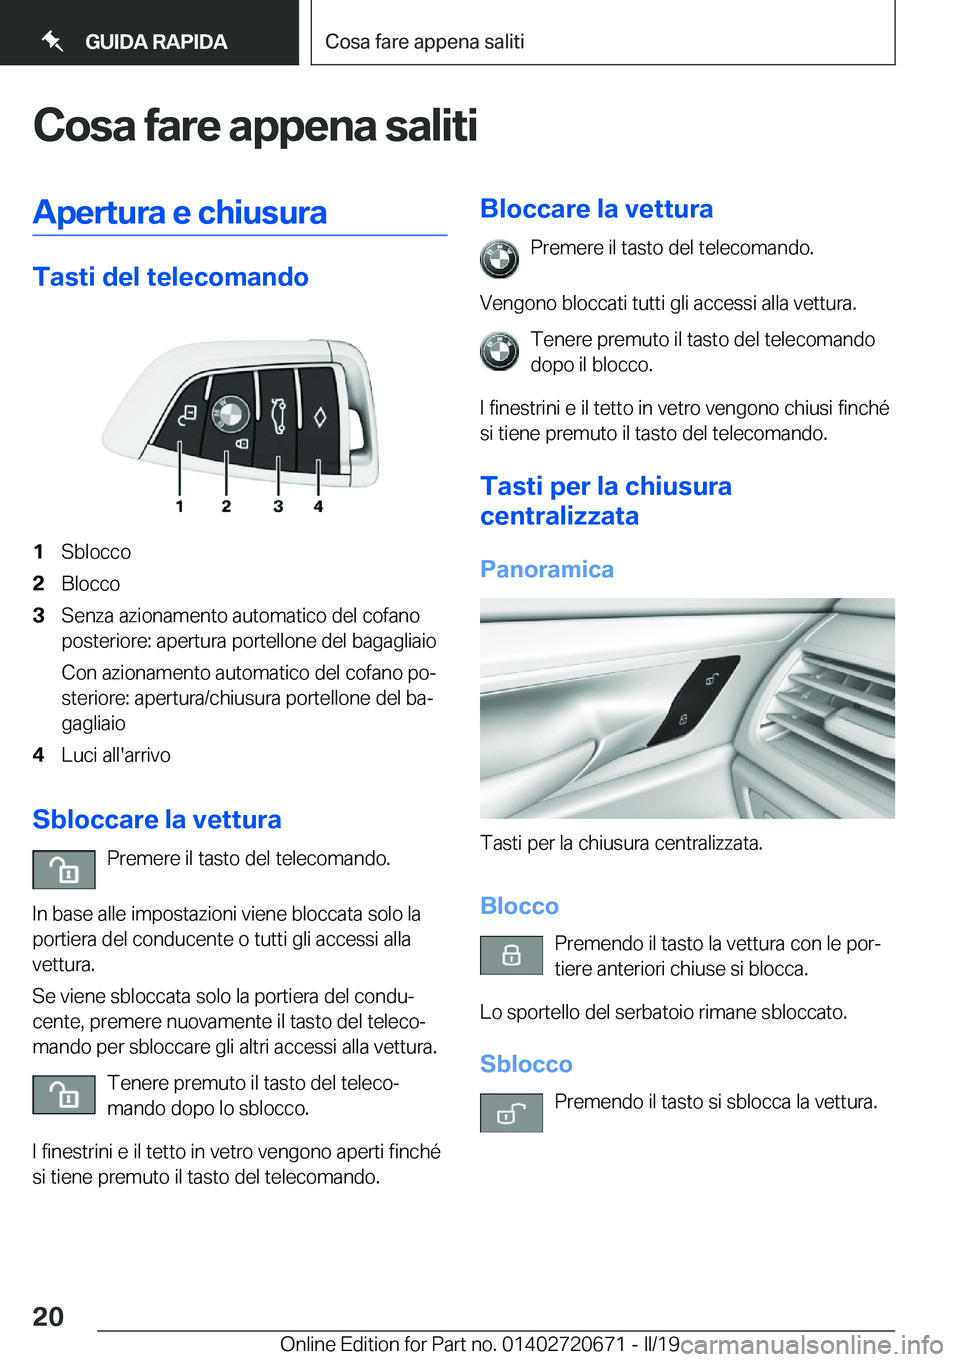 BMW M5 2019  Libretti Di Uso E manutenzione (in Italian) �C�o�s�a��f�a�r�e��a�p�p�e�n�a��s�a�l�i�t�i�A�p�e�r�t�u�r�a��e��c�h�i�u�s�u�r�a
�T�a�s�t�i��d�e�l��t�e�l�e�c�o�m�a�n�d�o
�1�S�b�l�o�c�c�o�2�B�l�o�c�c�o�3�S�e�n�z�a��a�z�i�o�n�a�m�e�n�t�o��a�u